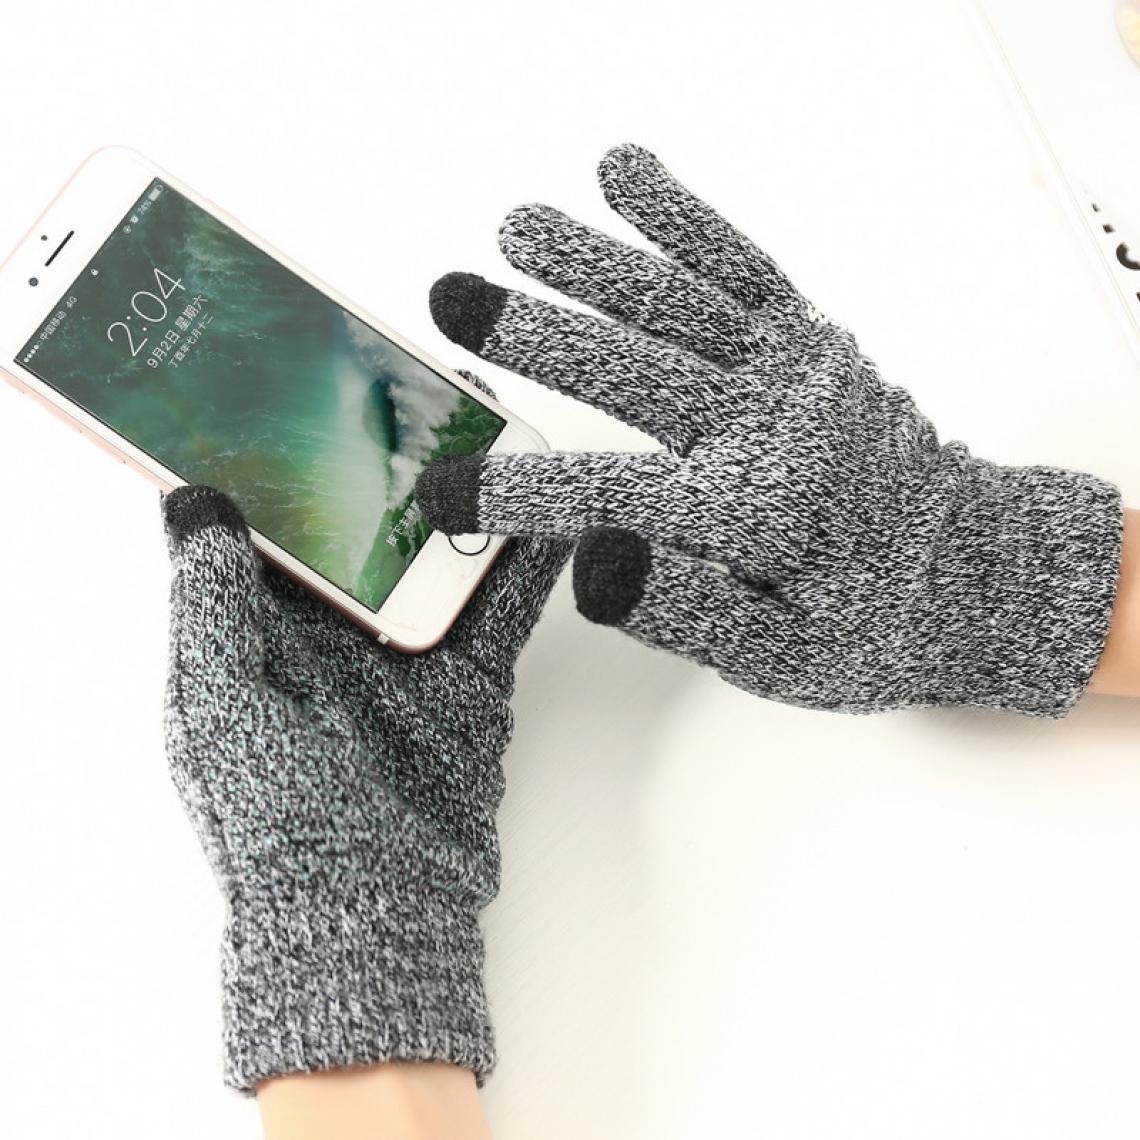 Shot - Gants Homme tactiles pour HUAWEI Y6 2019 Smartphone Taille M 3 doigts Hiver (NOIR) - Autres accessoires smartphone